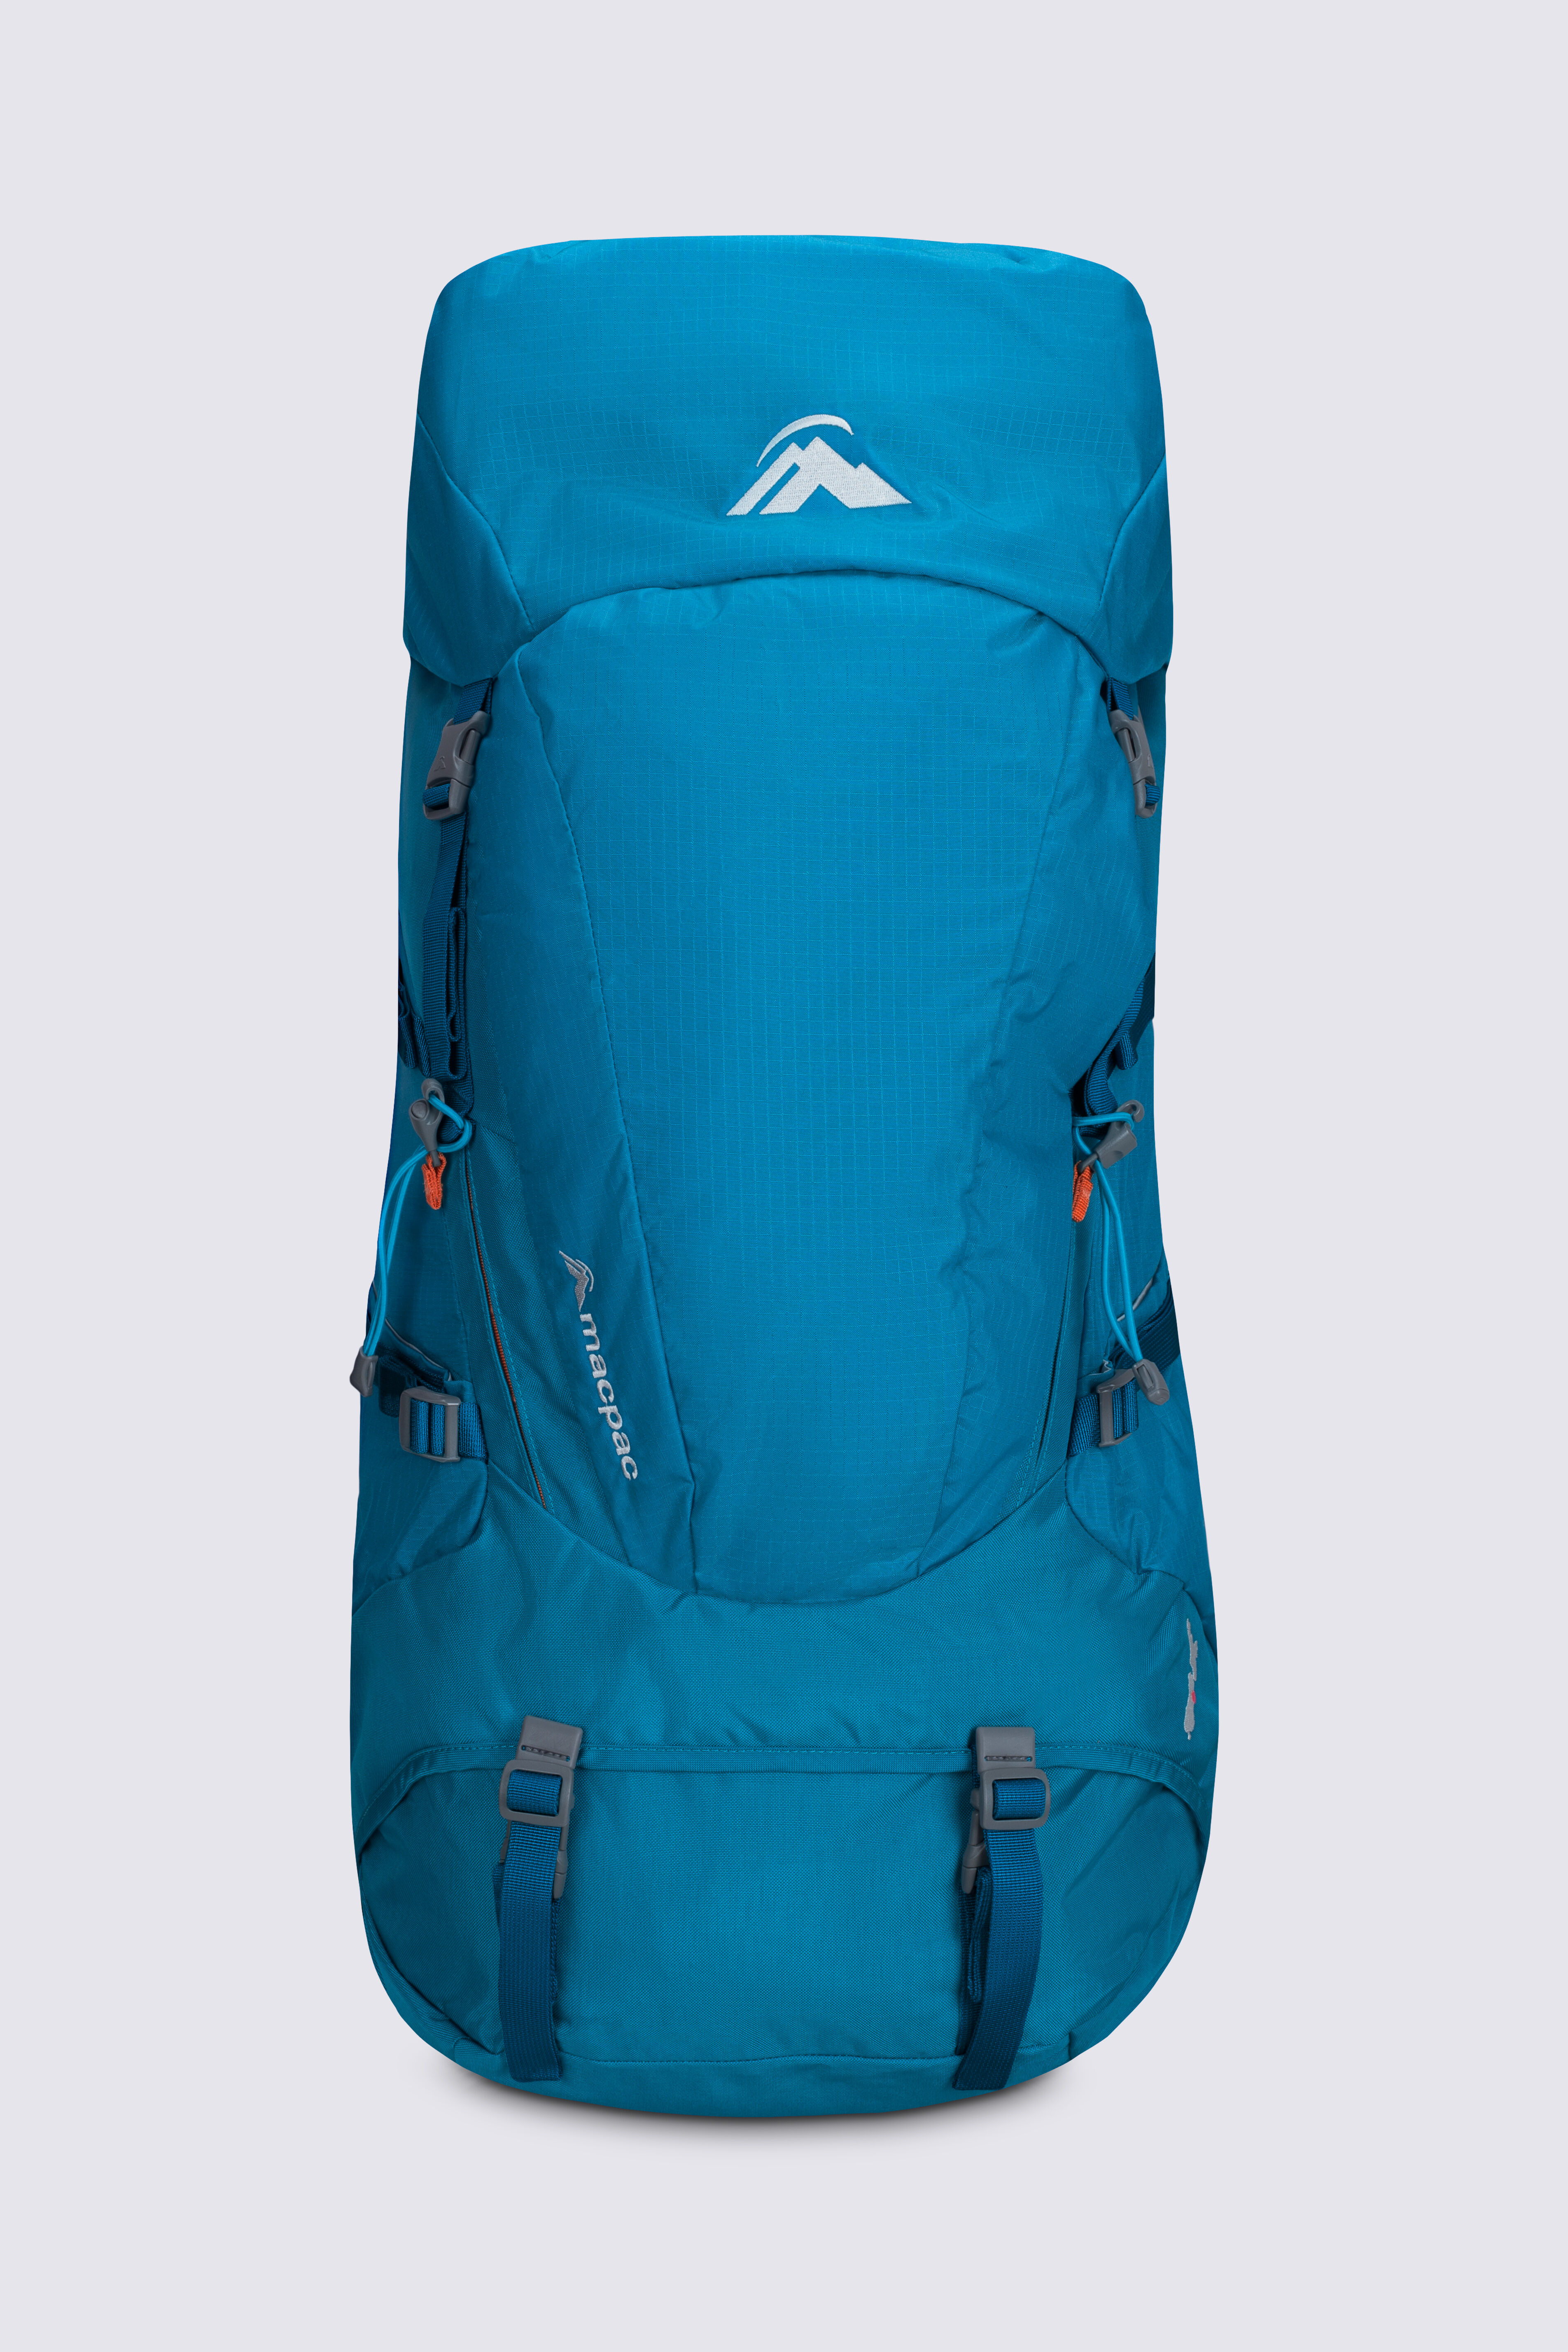 Macpac Torlesse 50L Hiking Backpack | Macpac